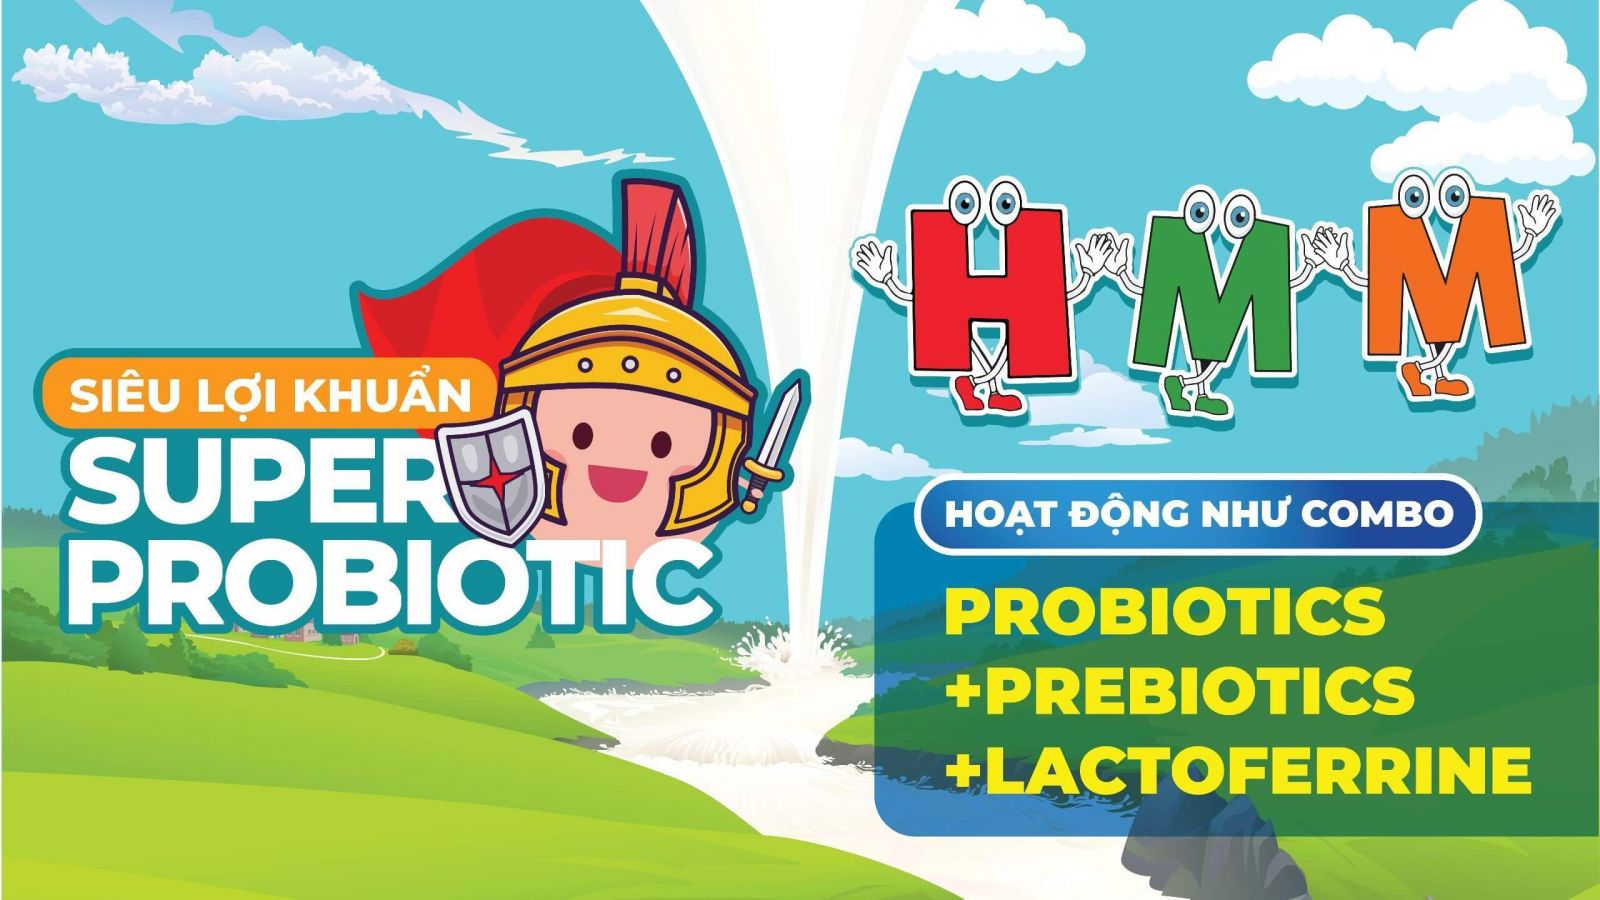 HMM – Lợi khuẩn hỗ trợ hệ tiêu hóa và giúp tăng cân ở trẻ nhỏ